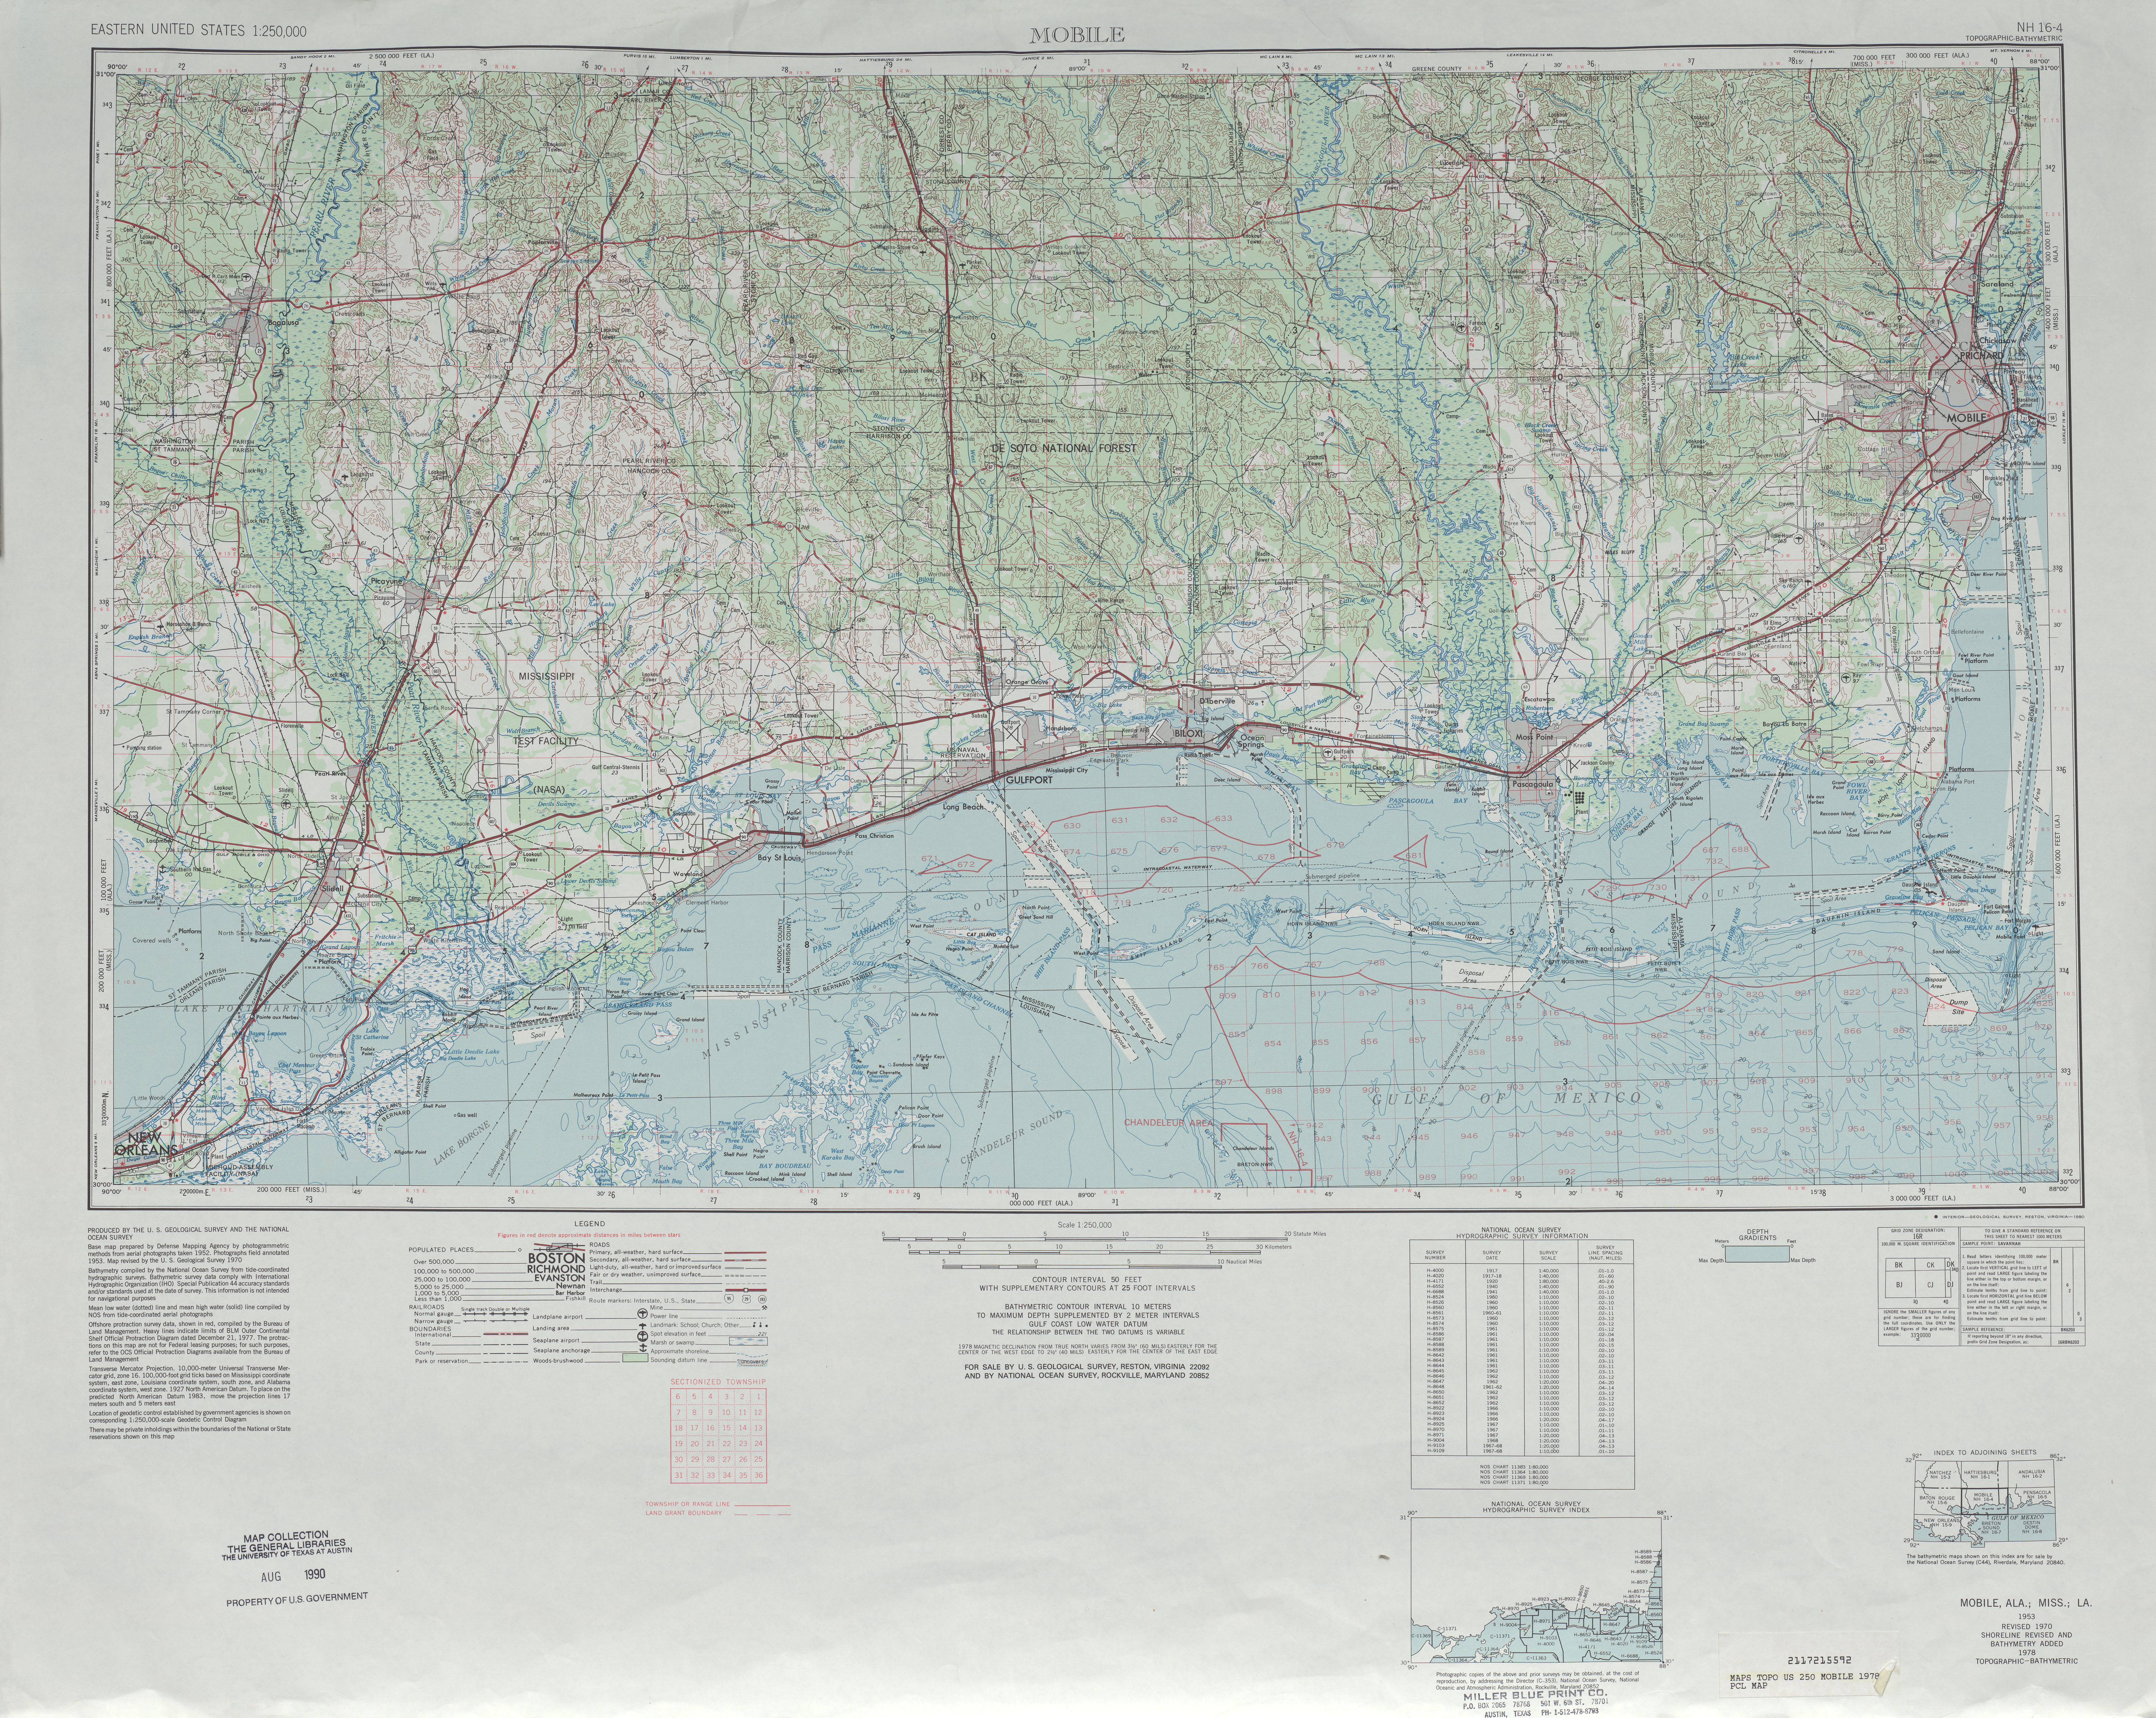 Hoja Mobile del Mapa Topográfico de los Estados Unidos 1978